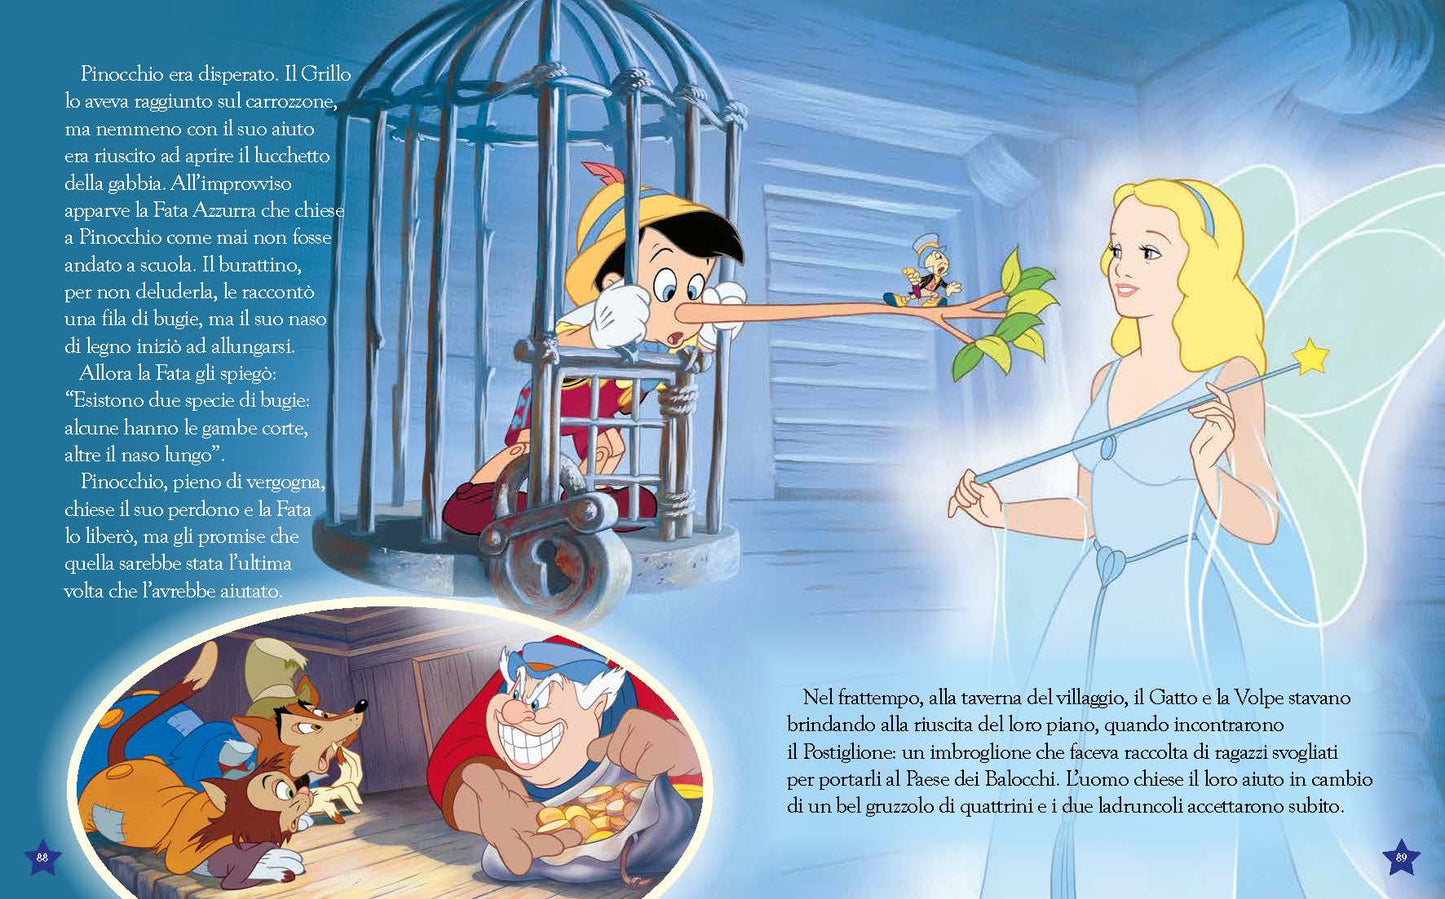 Il grande libro delle Fiabe classiche Disney